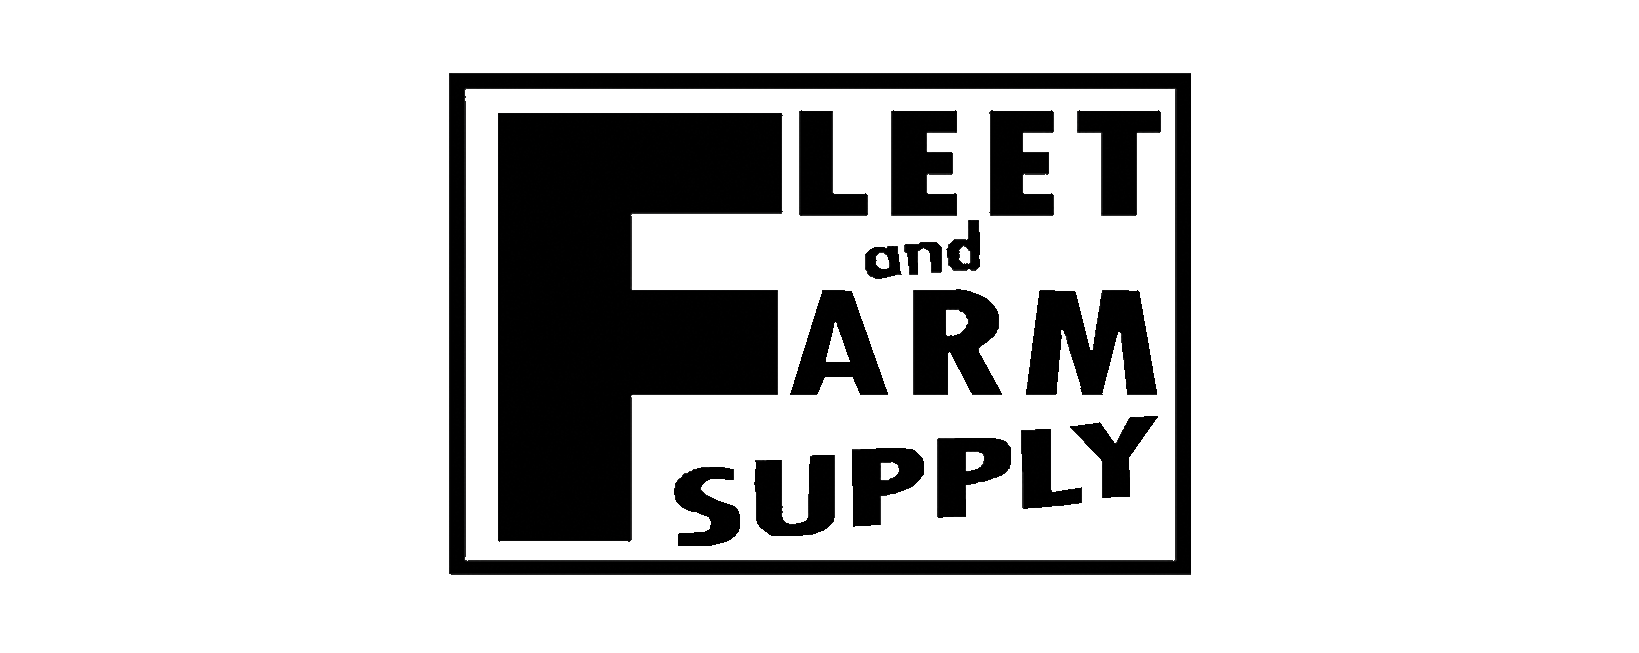 Fleet&Farm